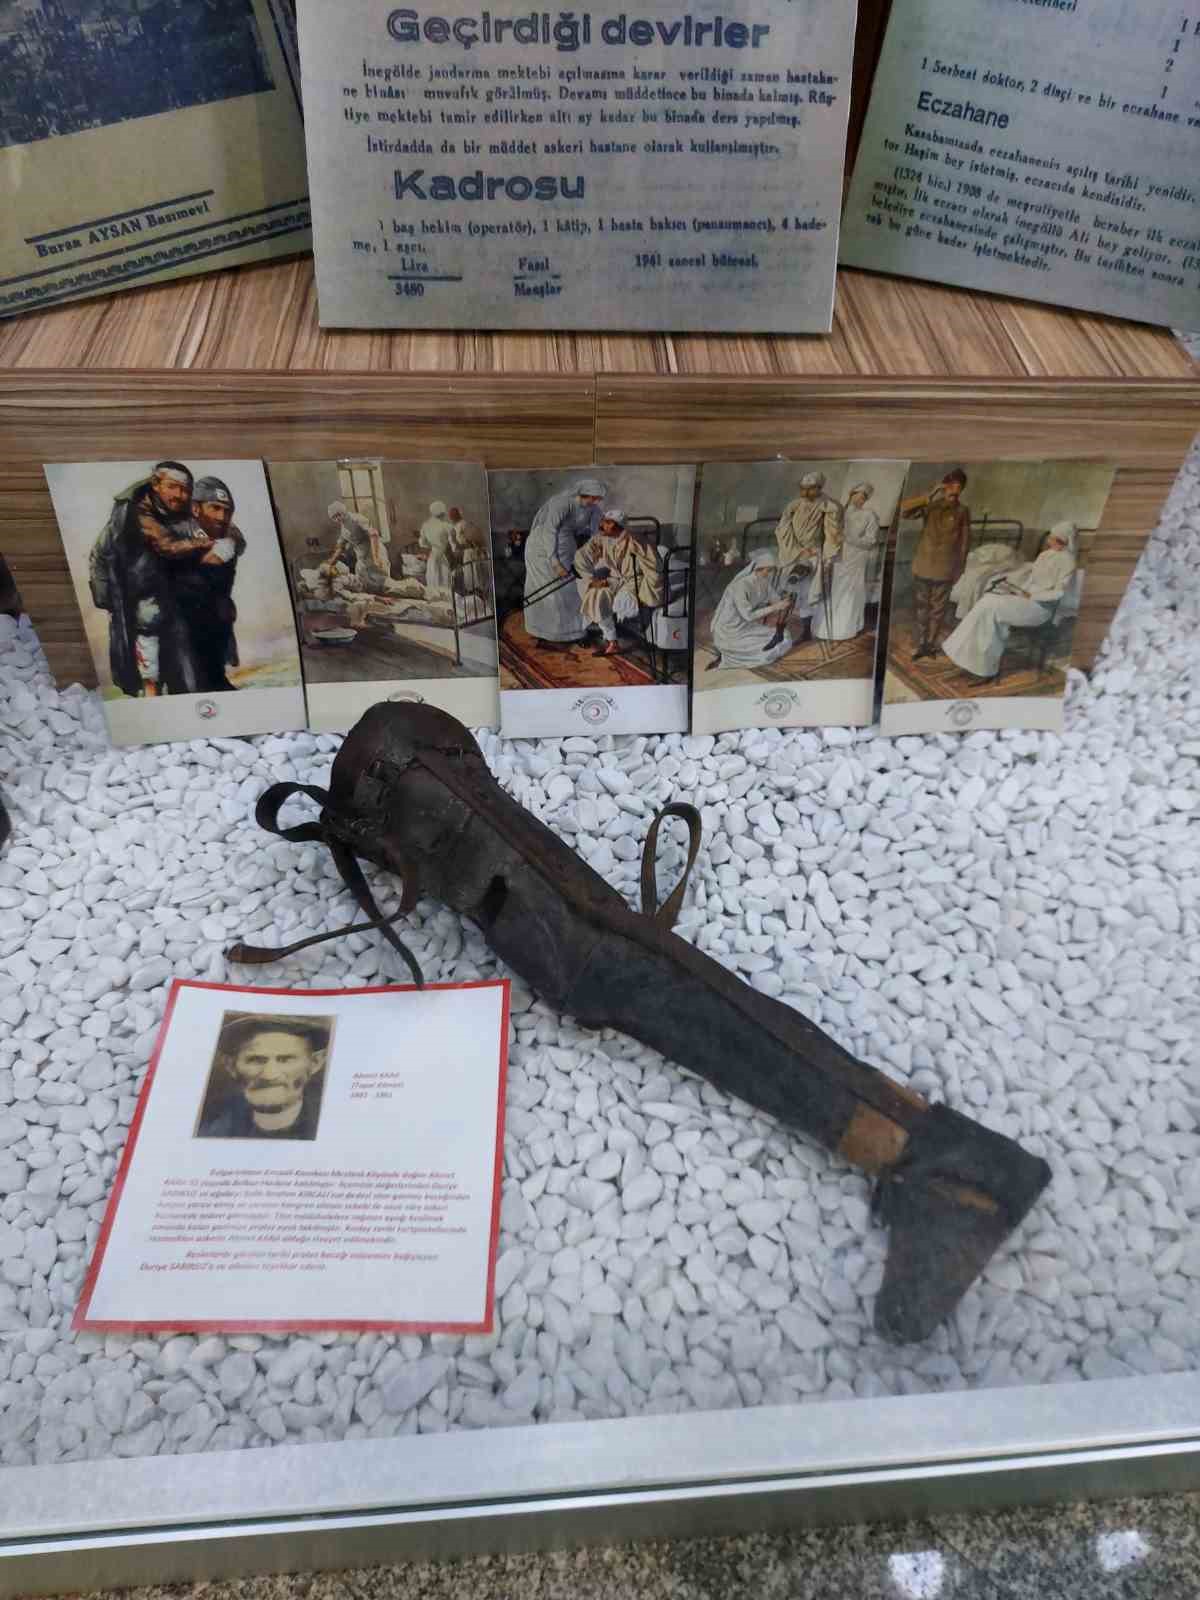 Balkan Savaşı’ndan kalan 110 yıllık protez bacak bu müzede sergileniyor
